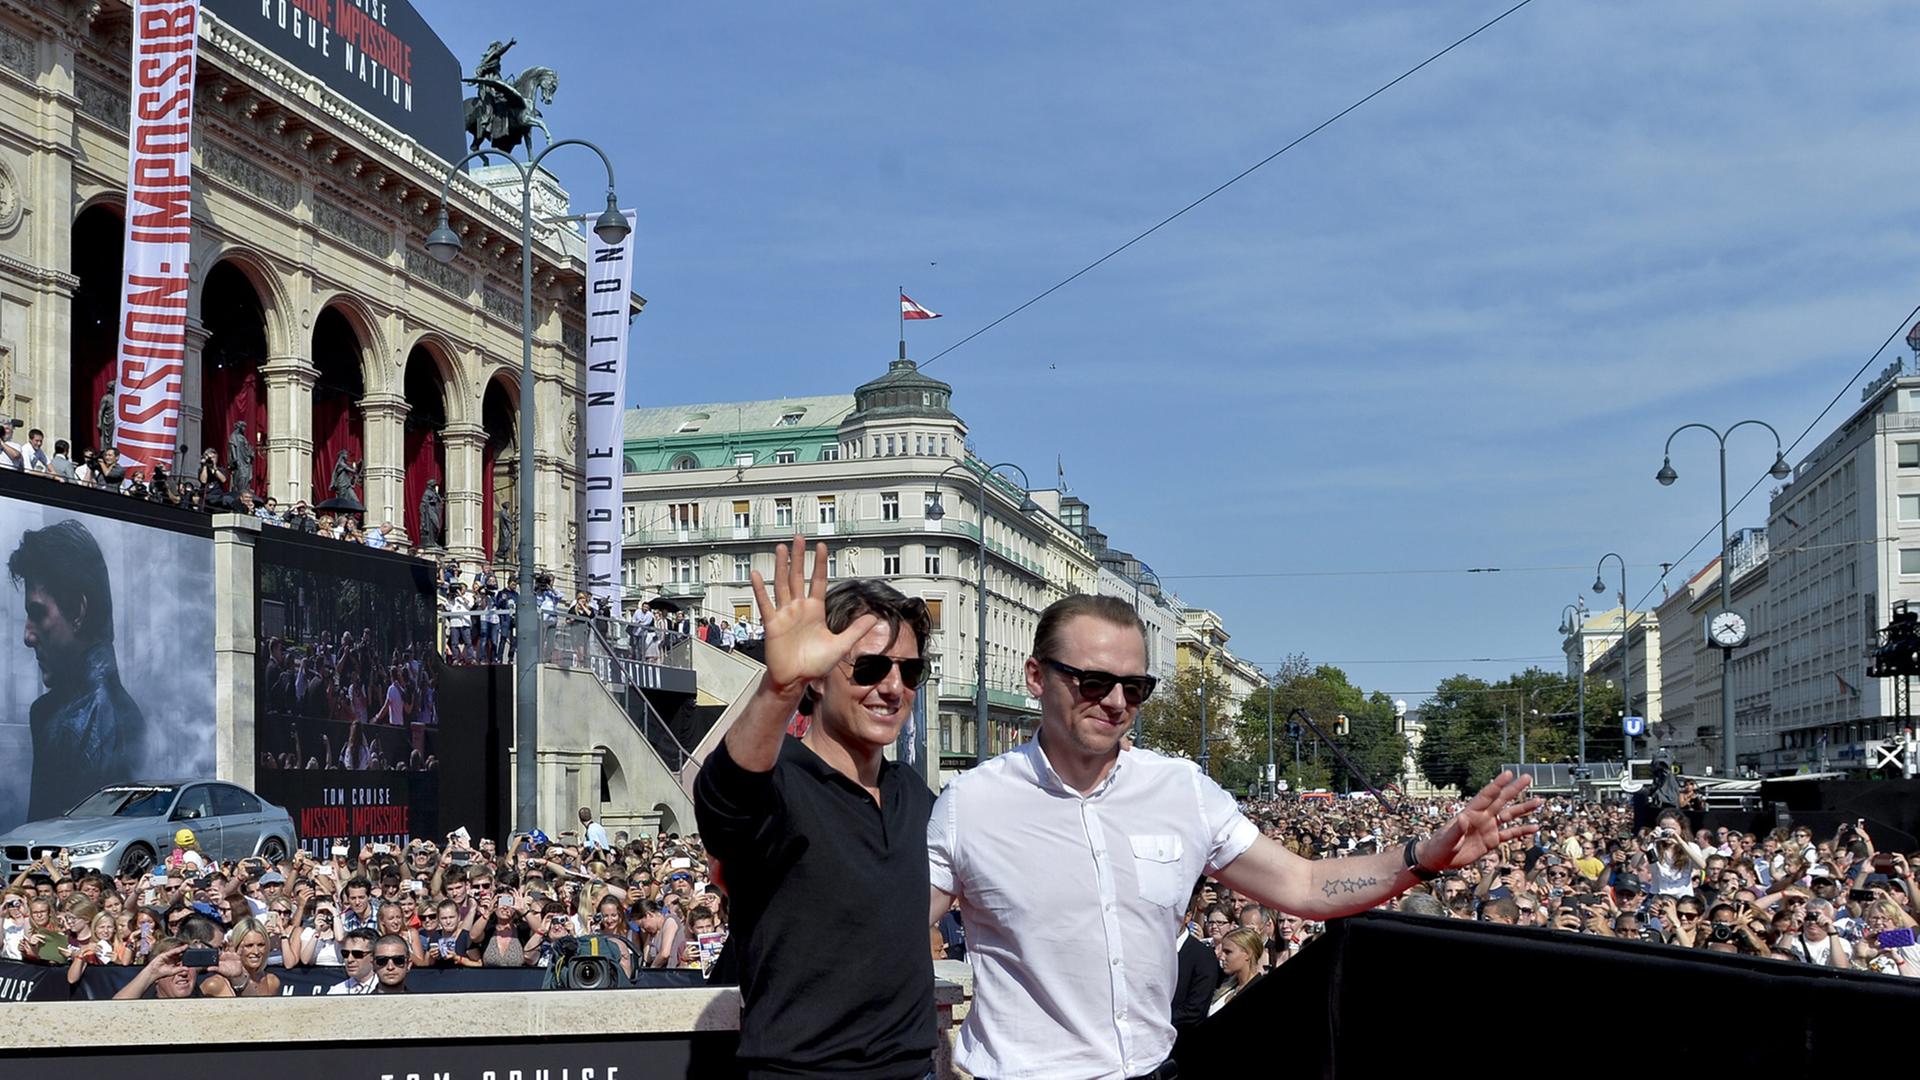 Weltpremiere von "Mission: Impossible - Rogue Nation" in Wien - Tom Cruise und Simon Pegg präsentieren sich dem Publikum.